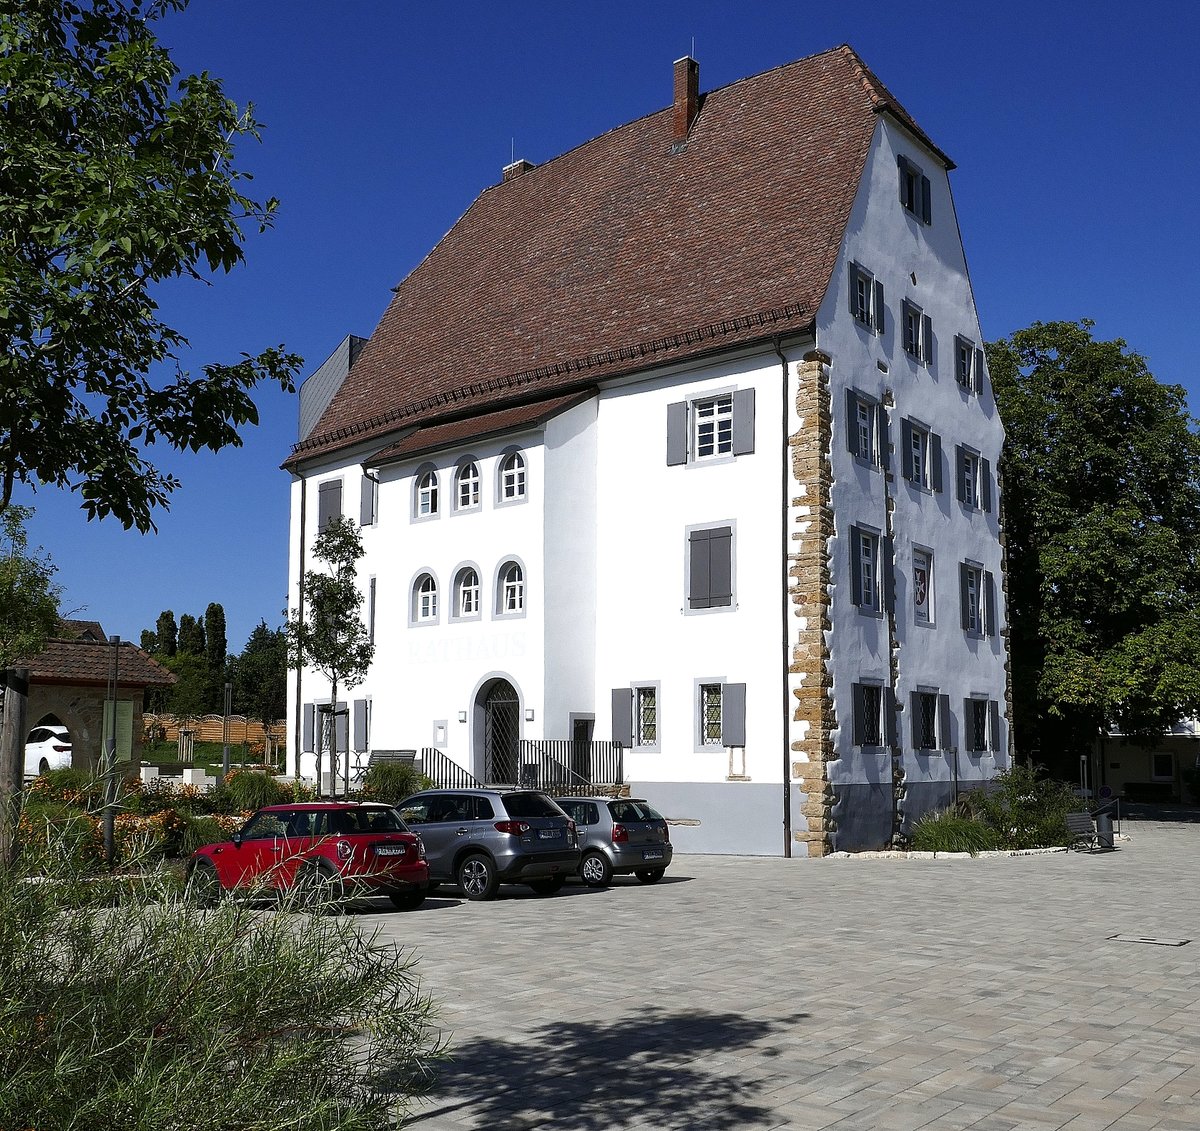 Eschbach im Markgrflerland, das Castell, ein Adelshaus aus dem 15.Jahrhundert, heute Rathaus der Gemeinde, Aug.2019